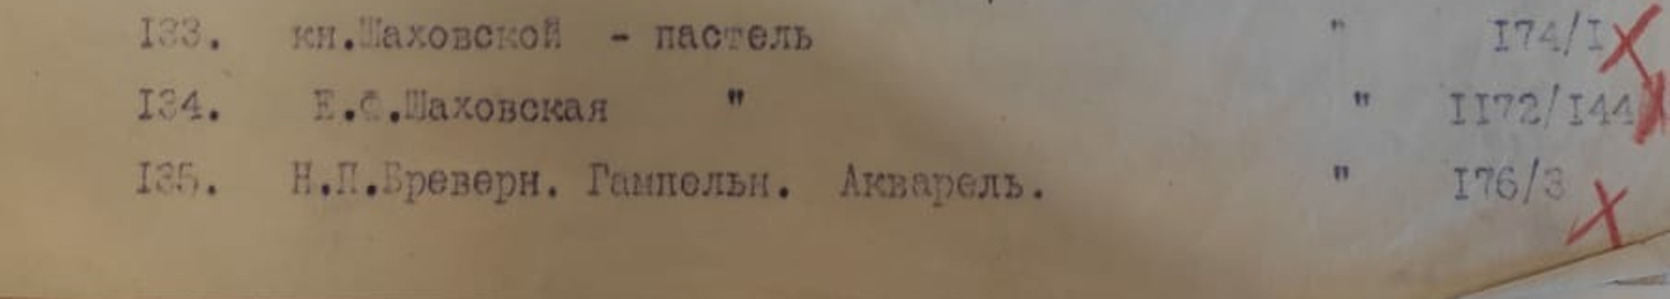 Фрагмент акта передачи предметов музея усадьбы «Покровское-Стрешнево» в ГИМ